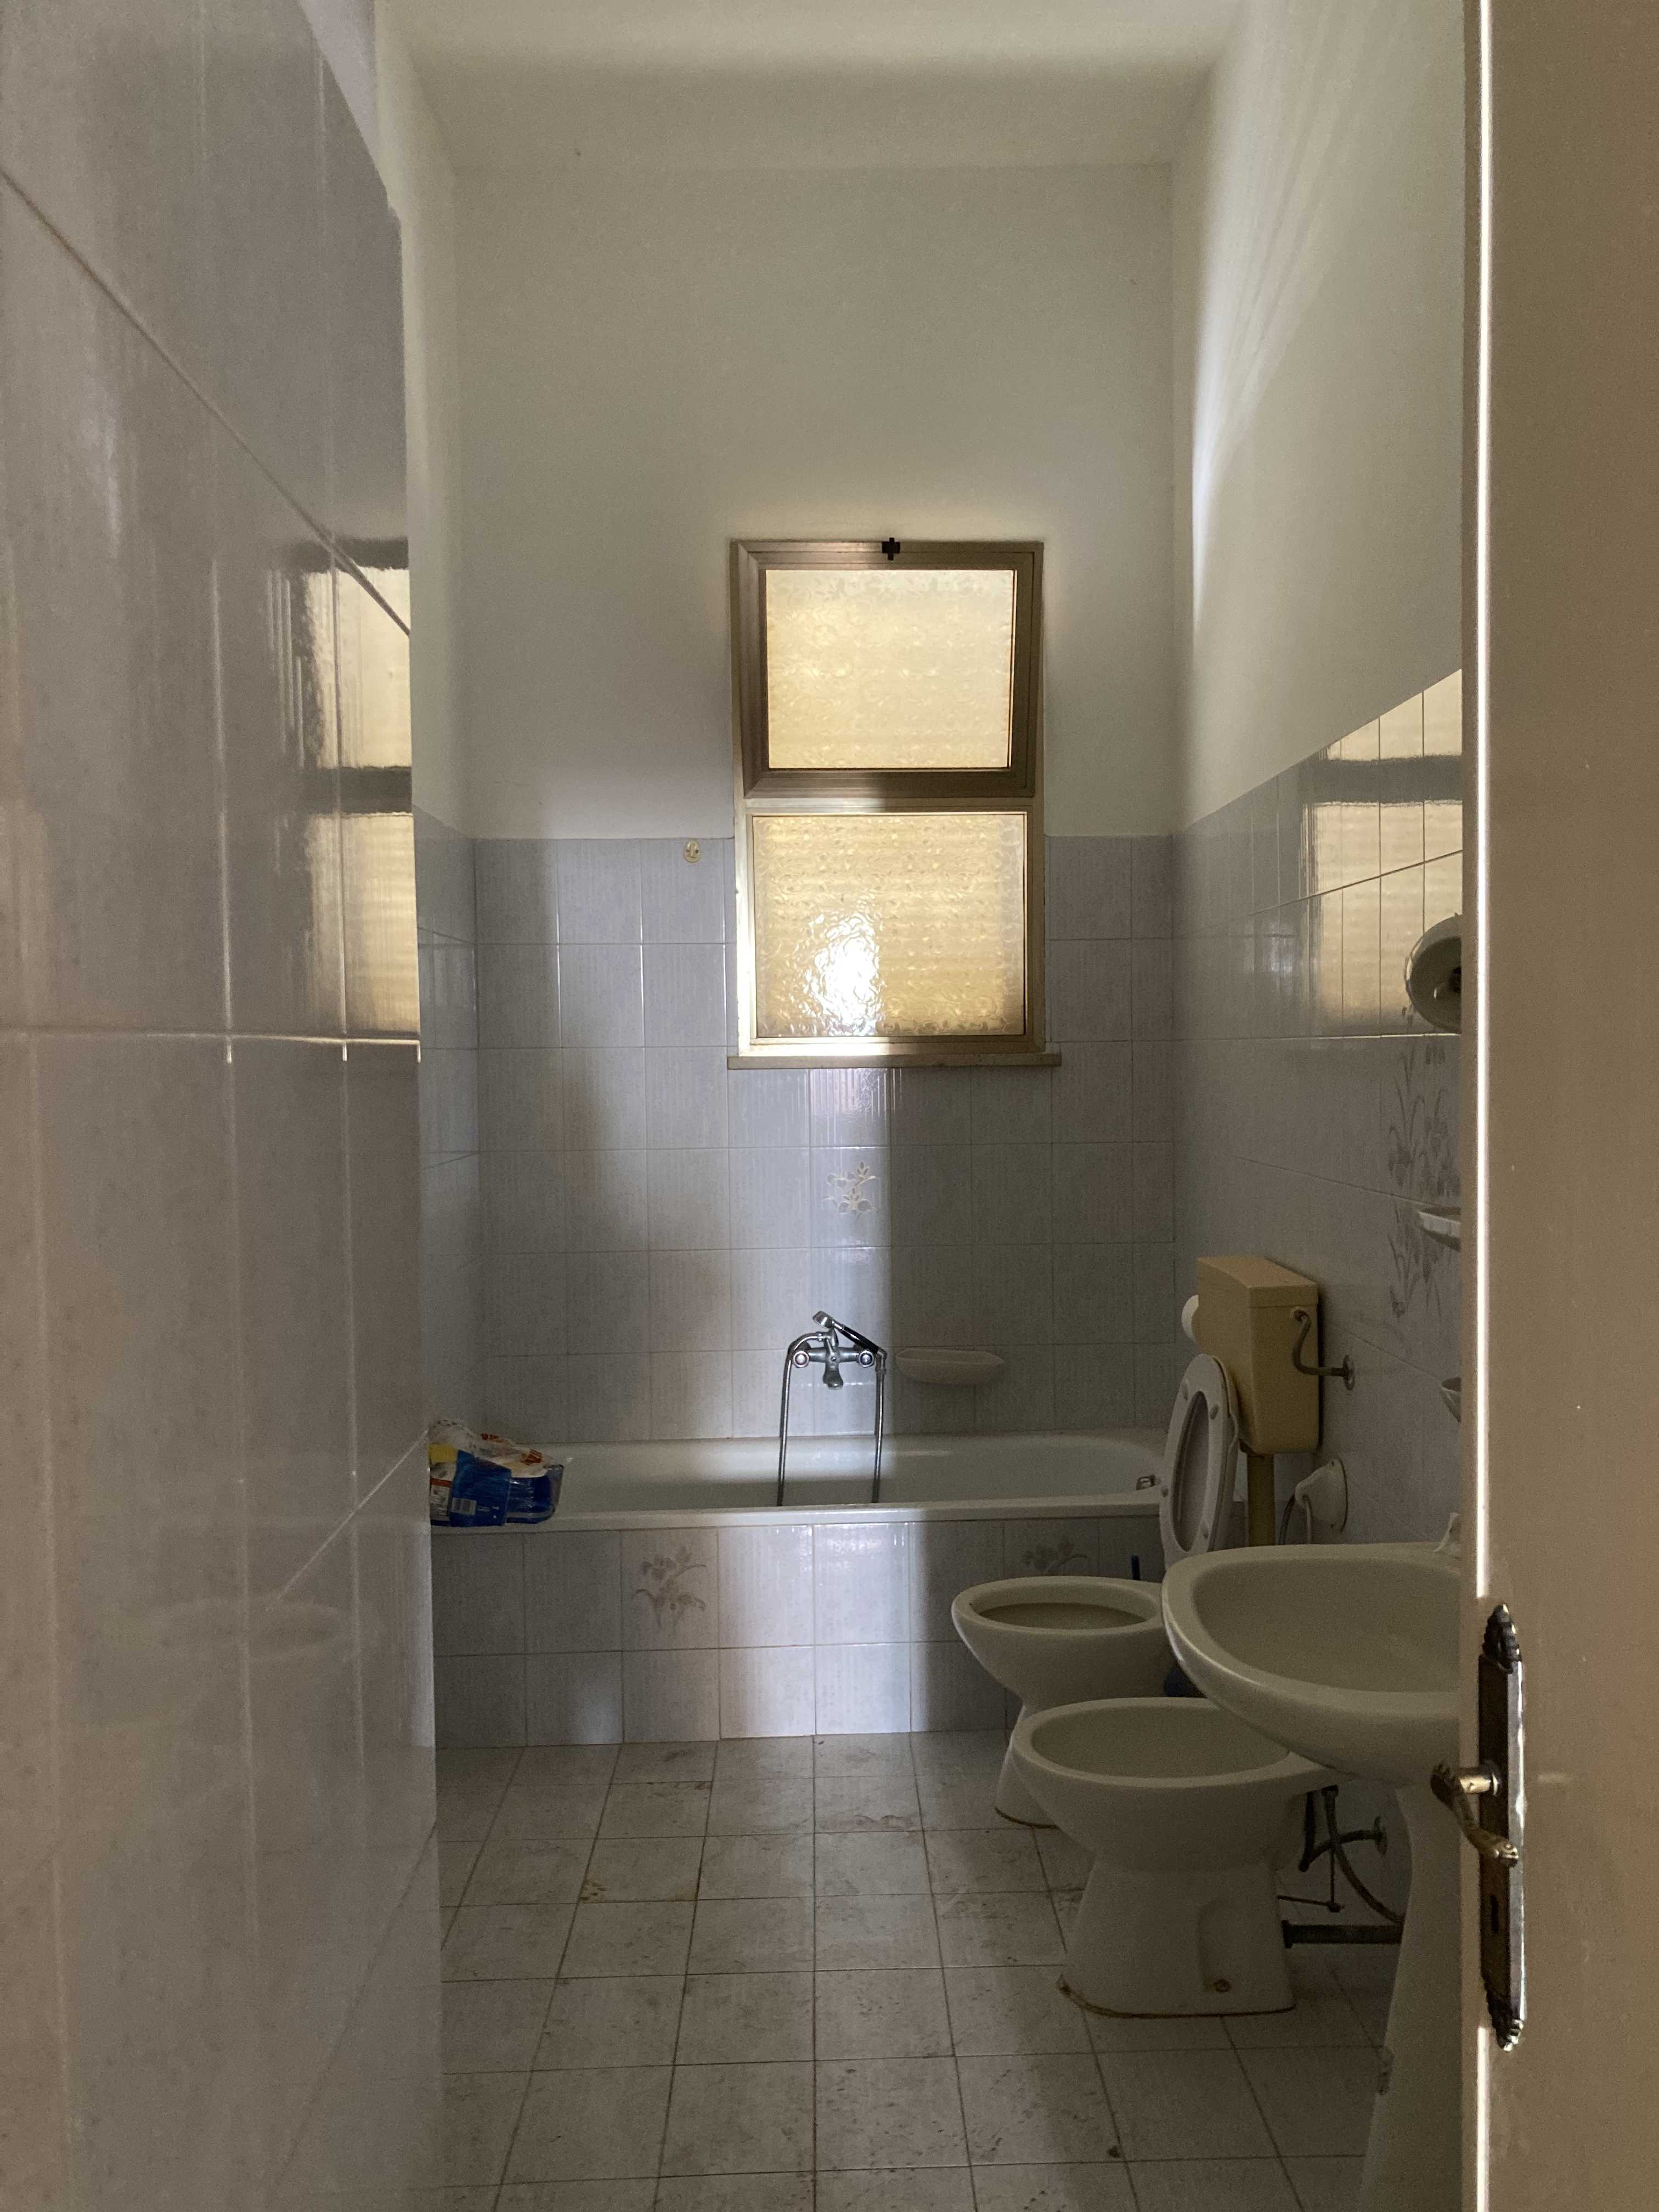 Vendite Salento: Vendita appartamento (Morciano di Leuca) - bagno